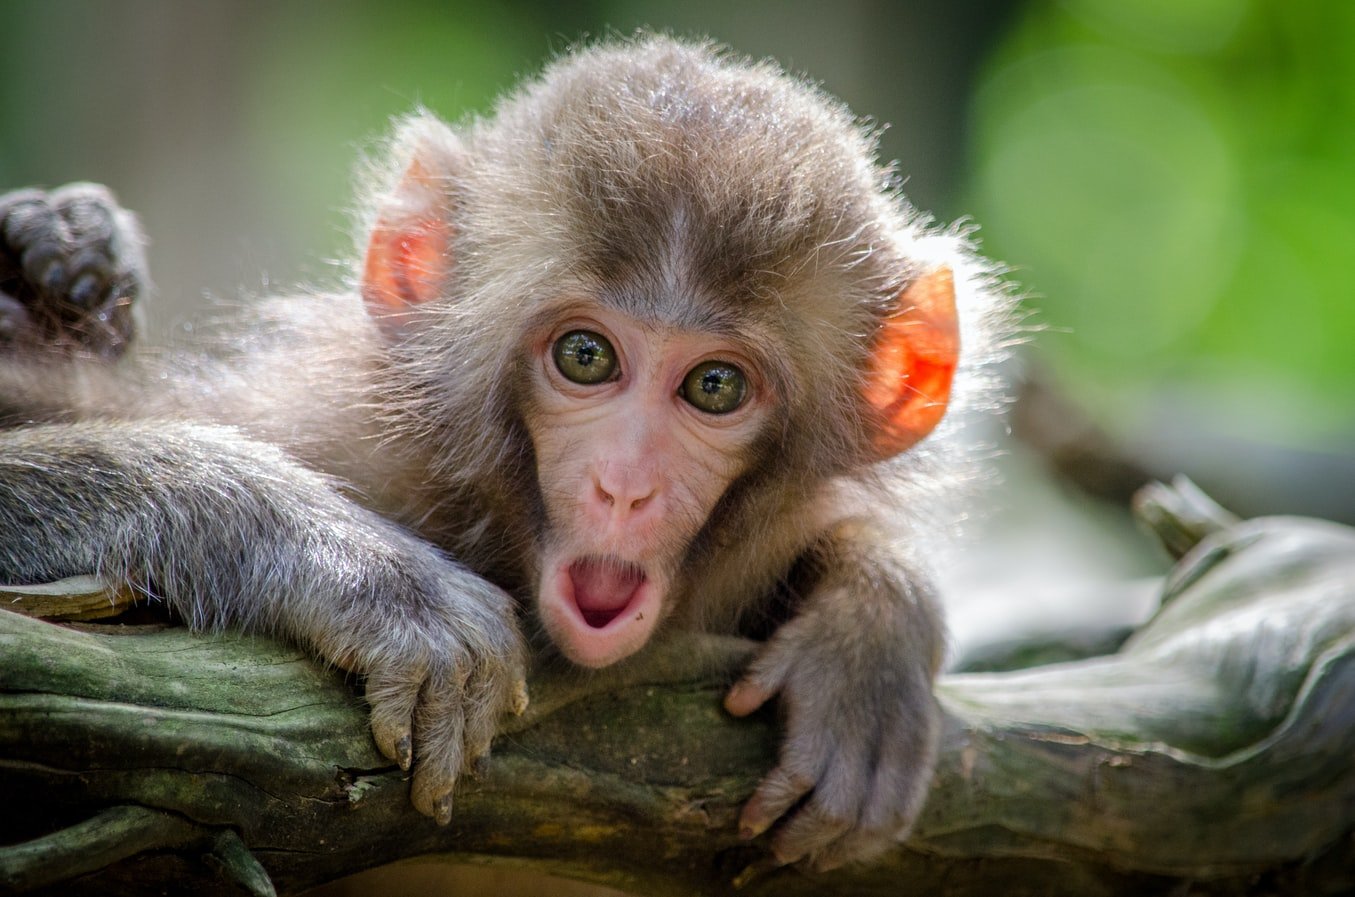 A monkey sitting on a branch. | Photo: Unsplash/Jamie Haughton